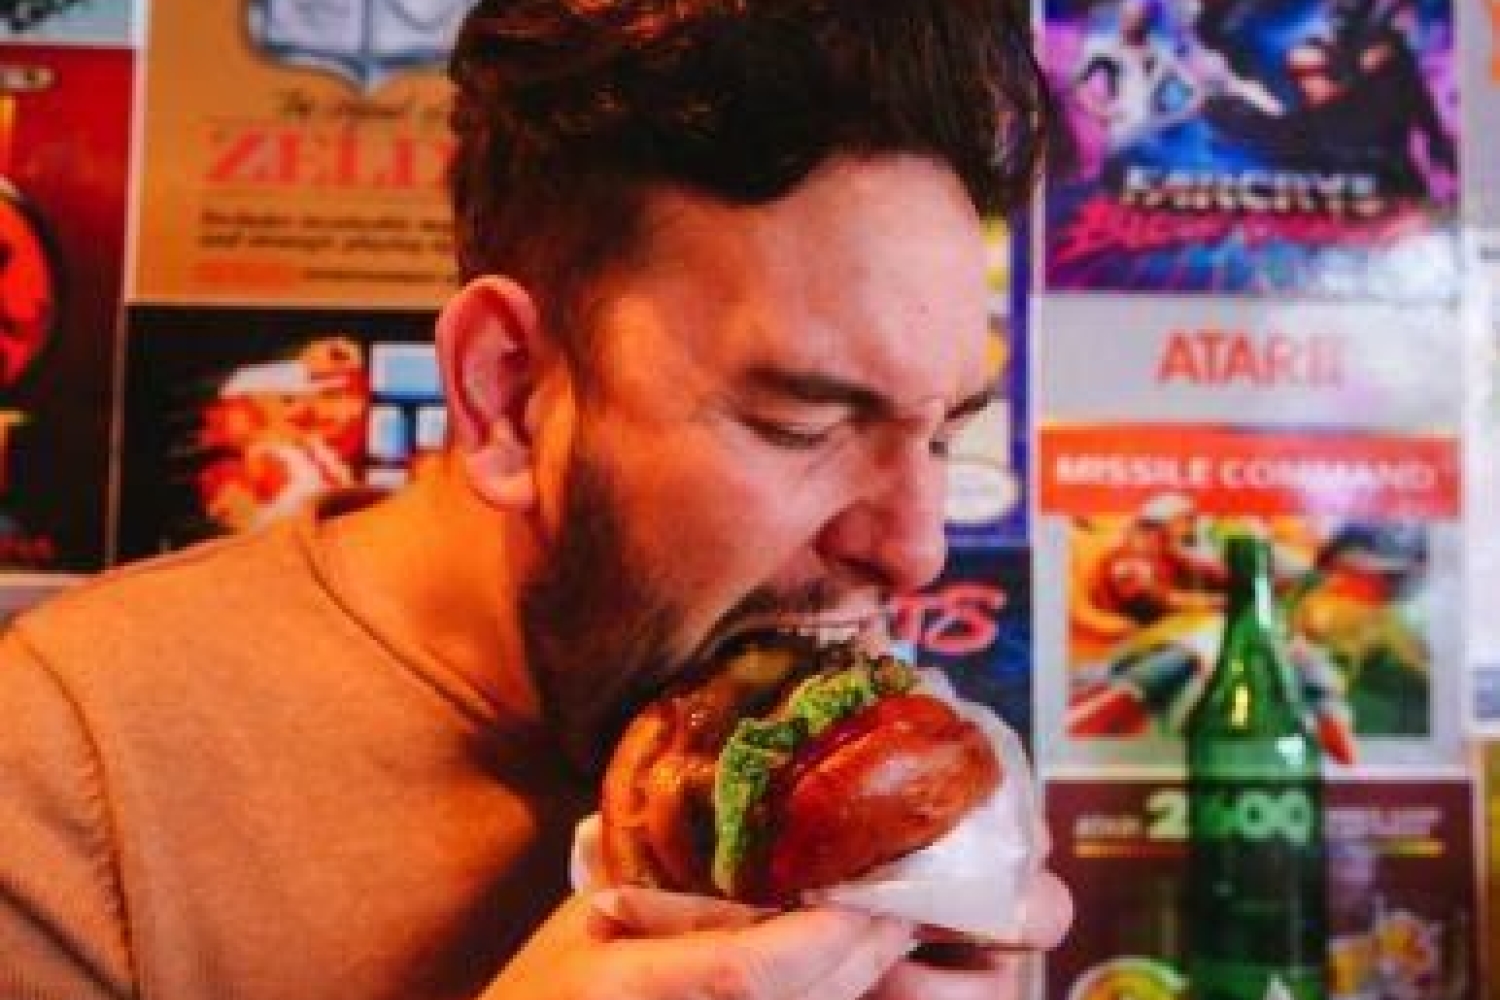 Mann som spiser en burger